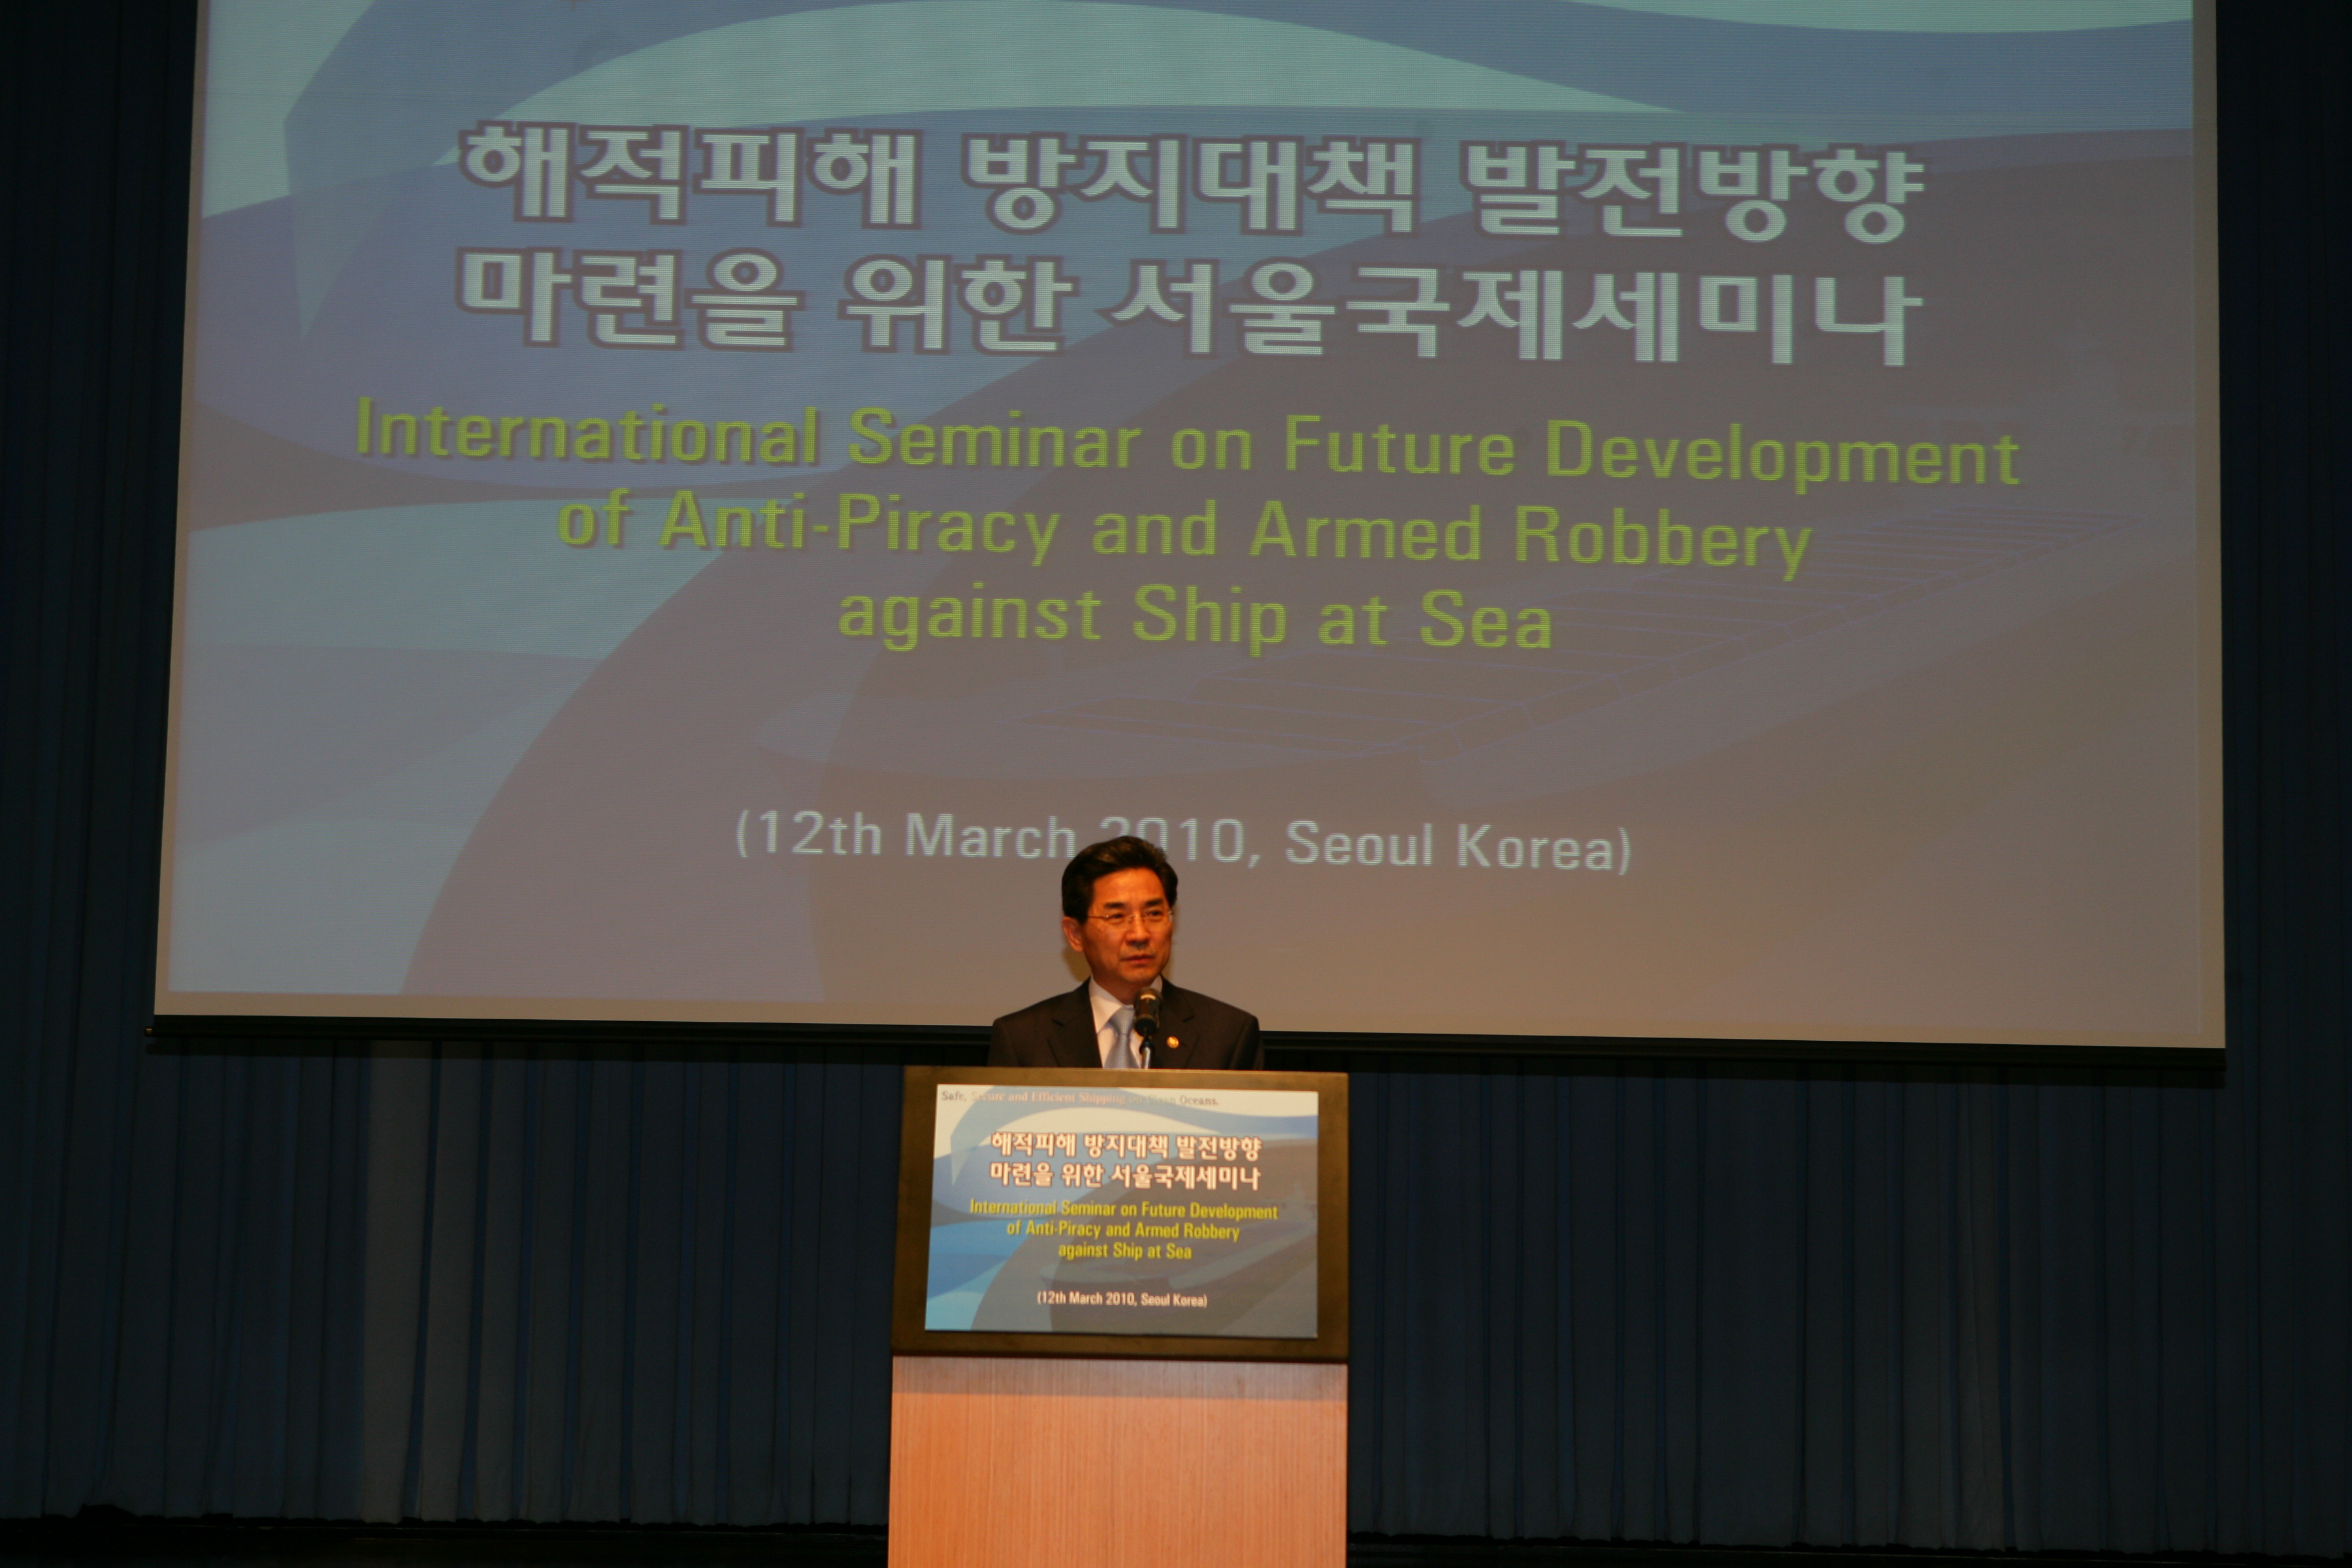 해적피해방지를 위한 서울국제세미나 - 포토이미지